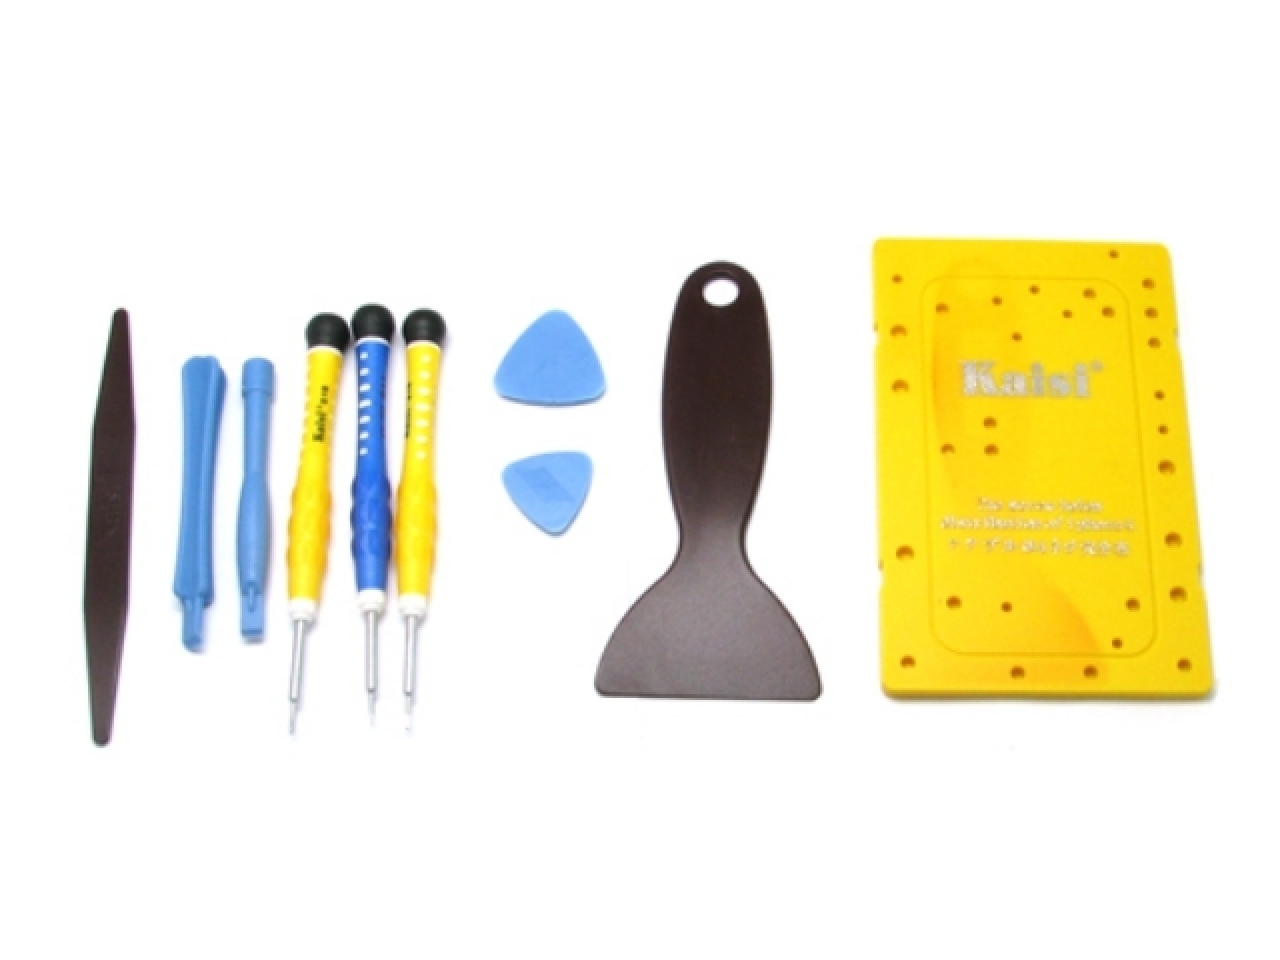 Plastic Opening Tools - Plastik Hebelwerkzeug online bestellen